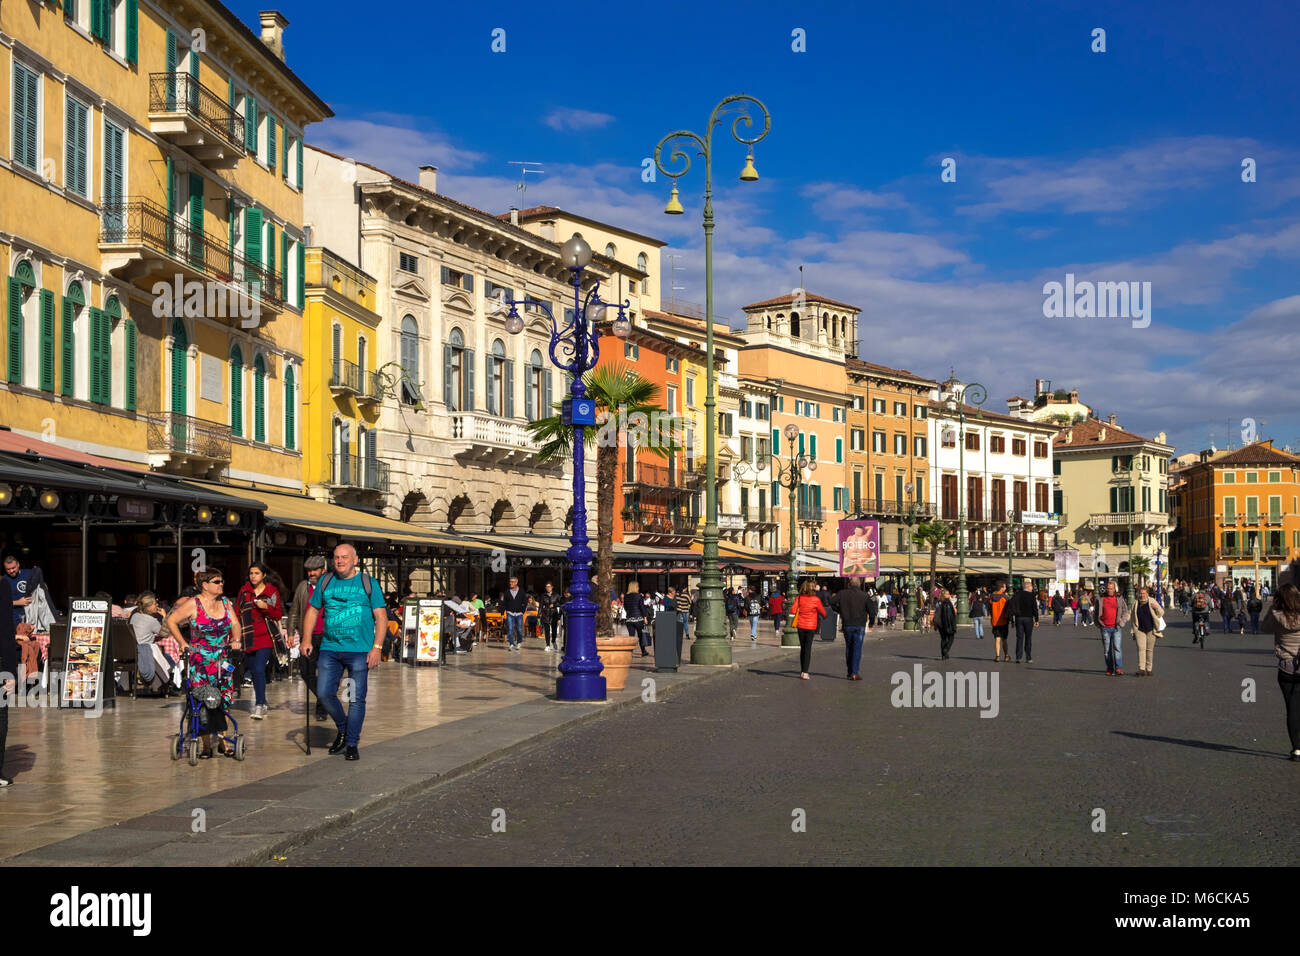 Piazza Bra, Verona, Italy Stock Photo